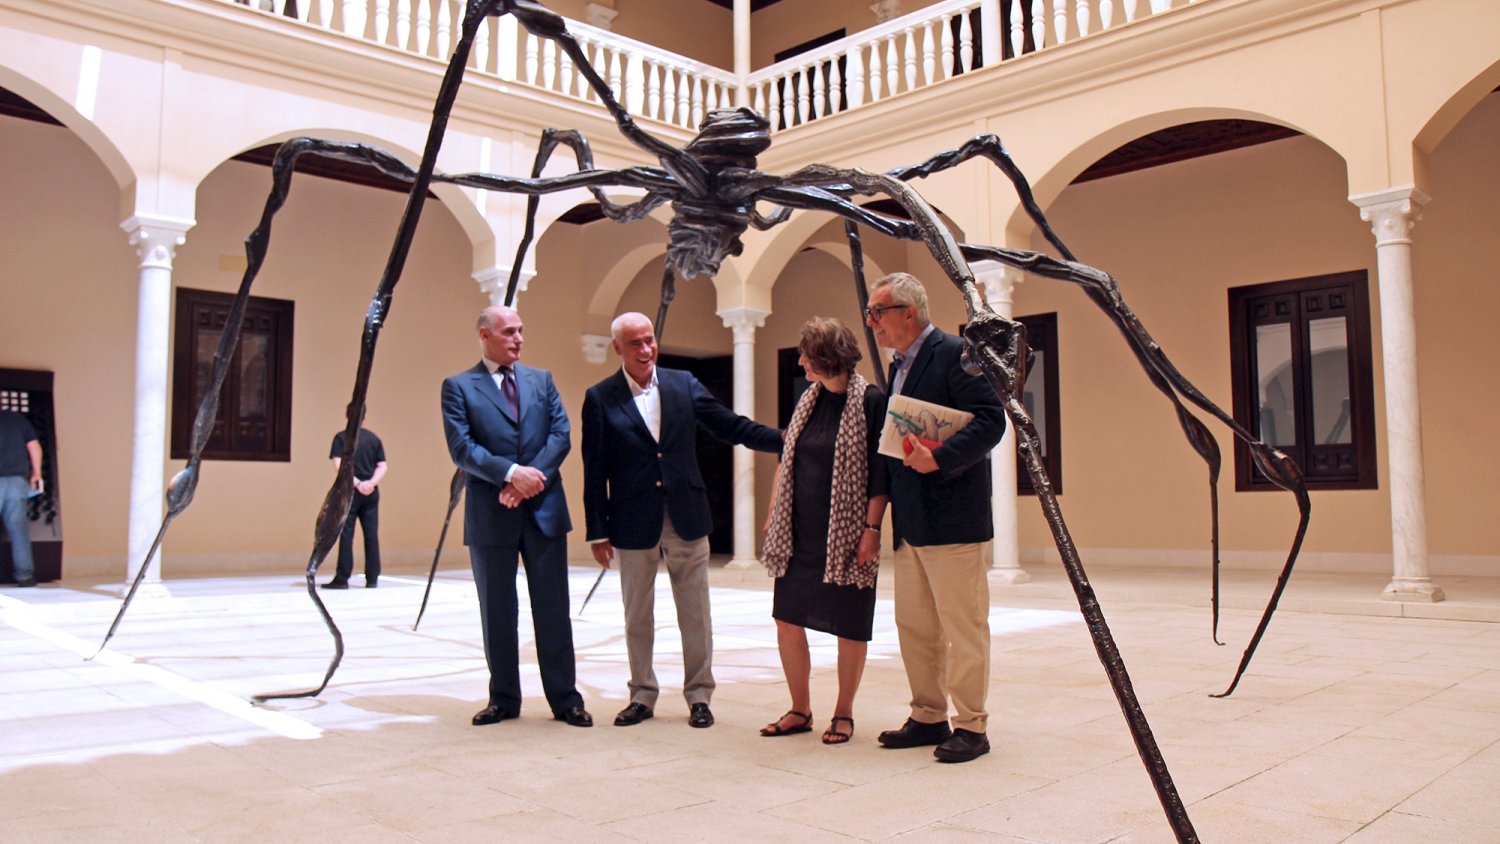 El MPM acoge una exposición de Louise Bourgeois con más de 100 obras de la artista